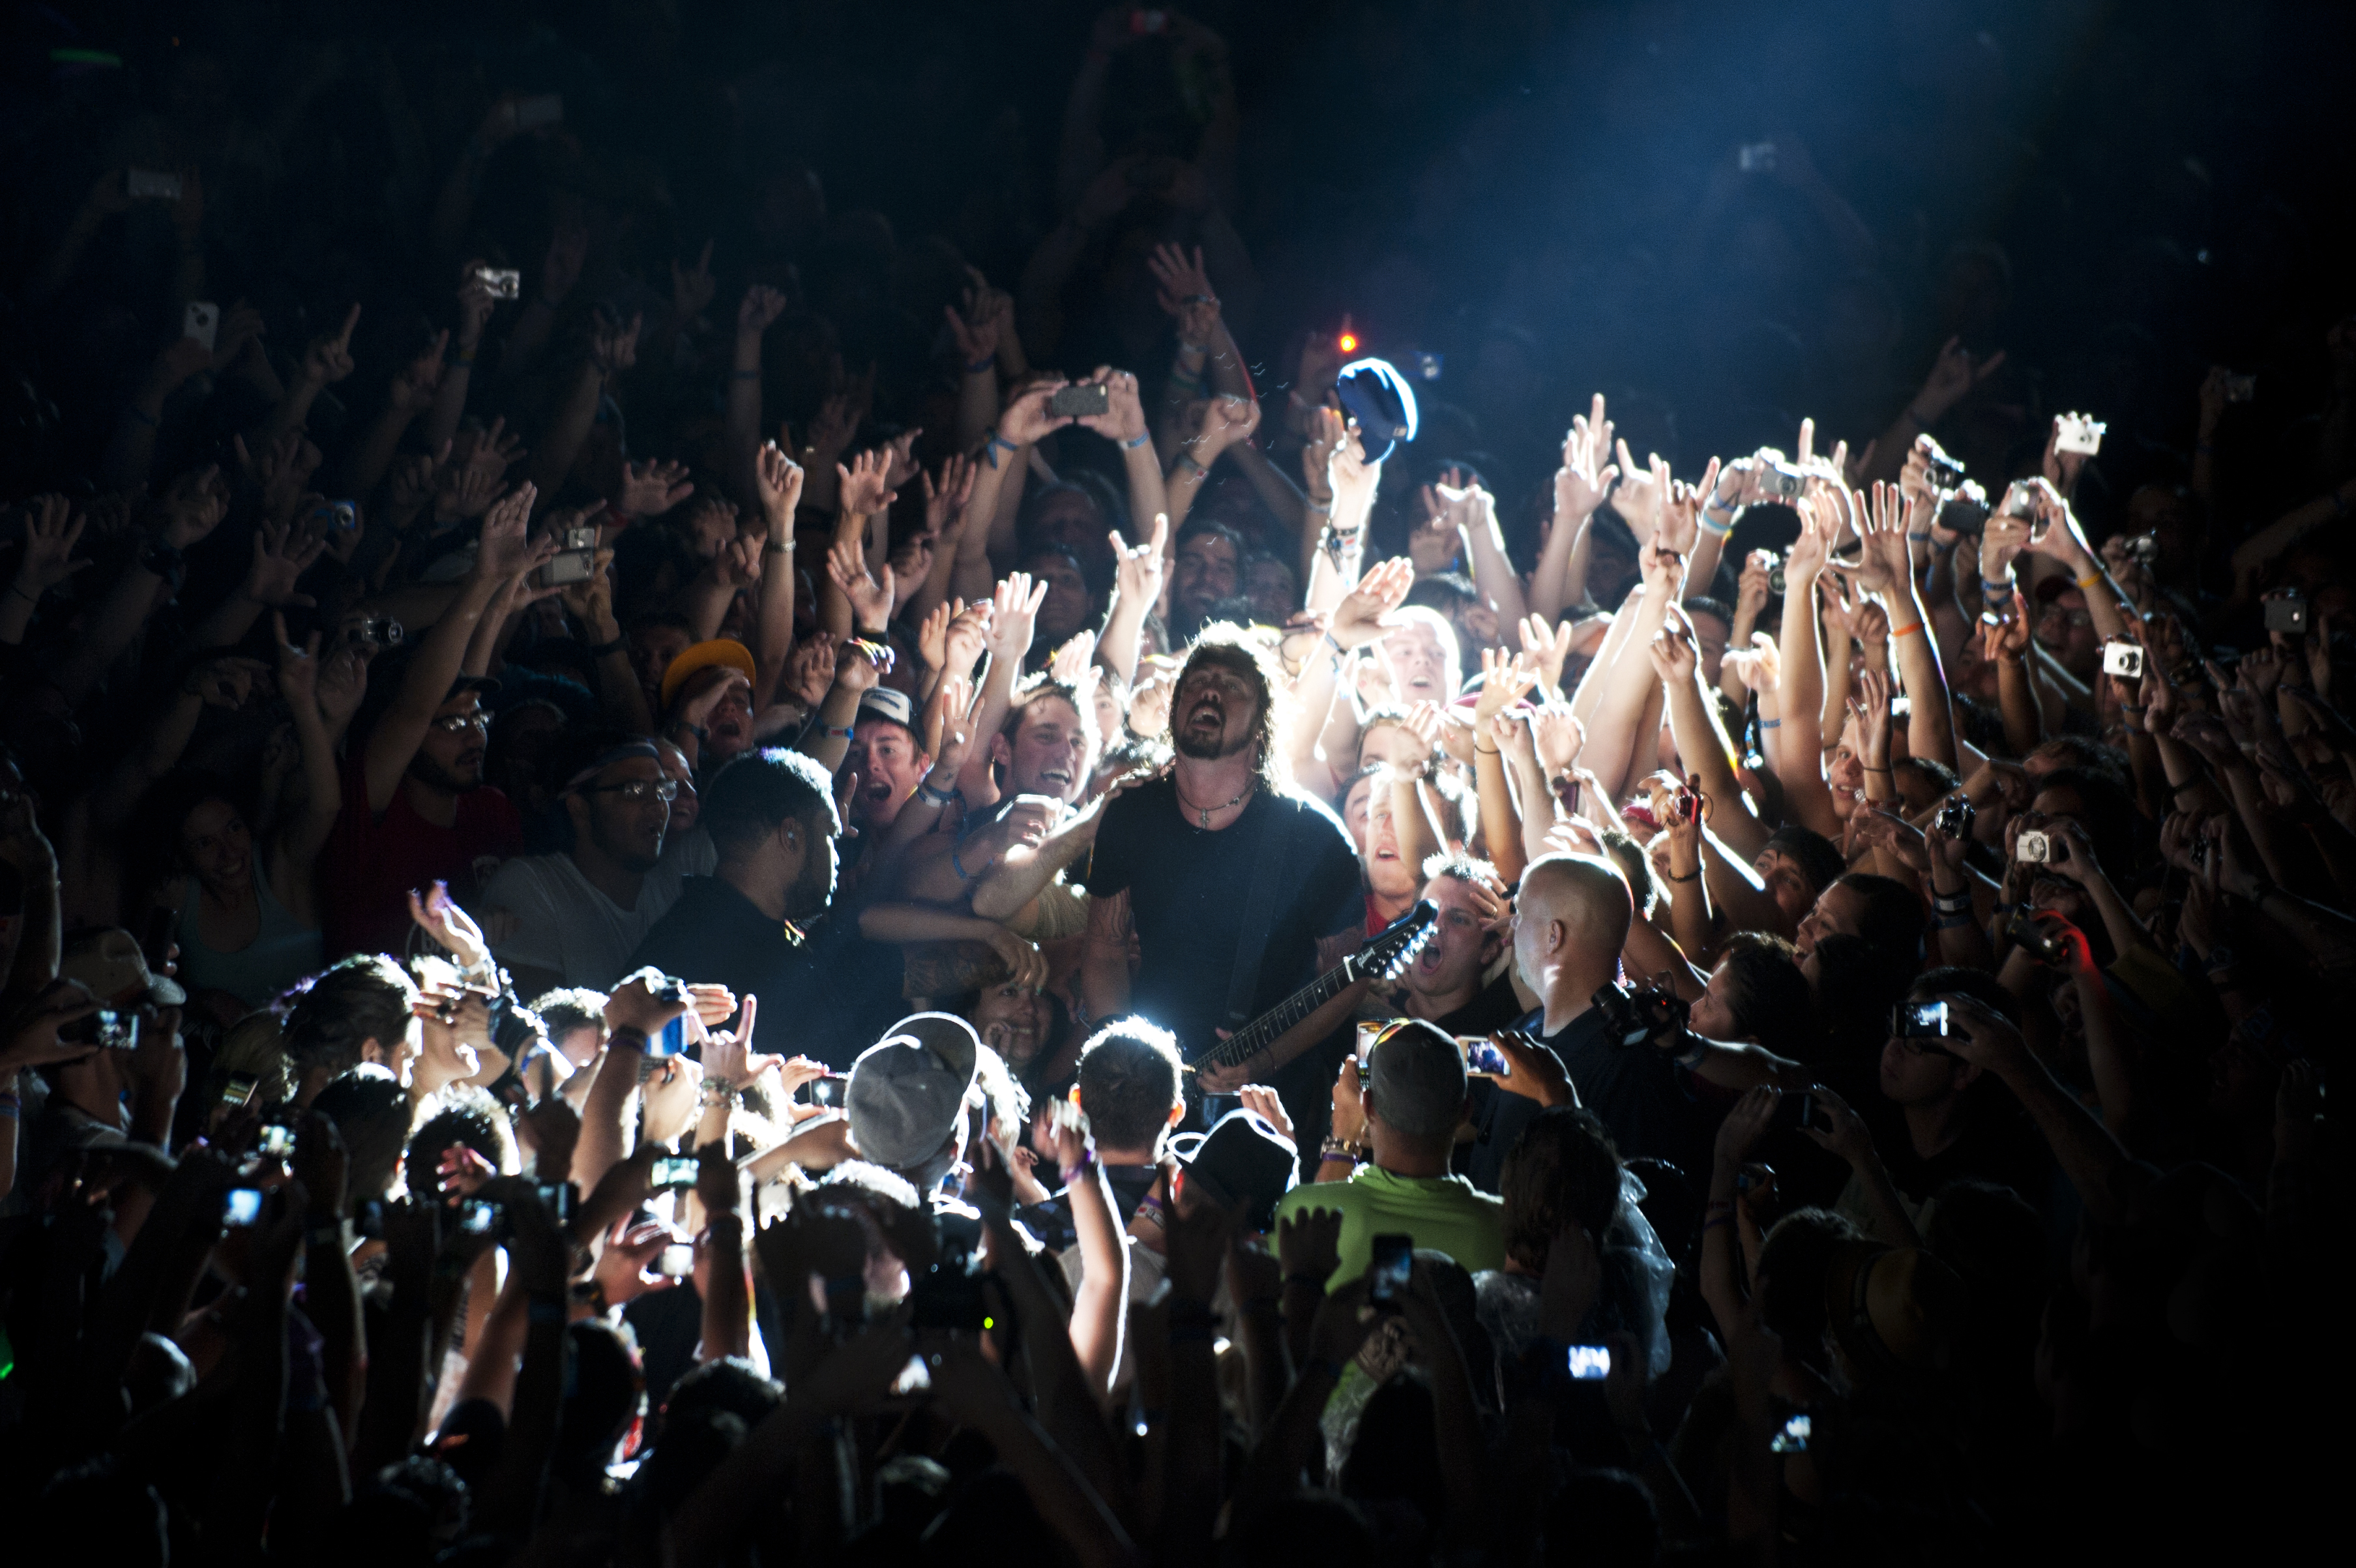 Много людей на концерте. Толпа на концерте. Концерт. Человек толпы. Люди на концерте.